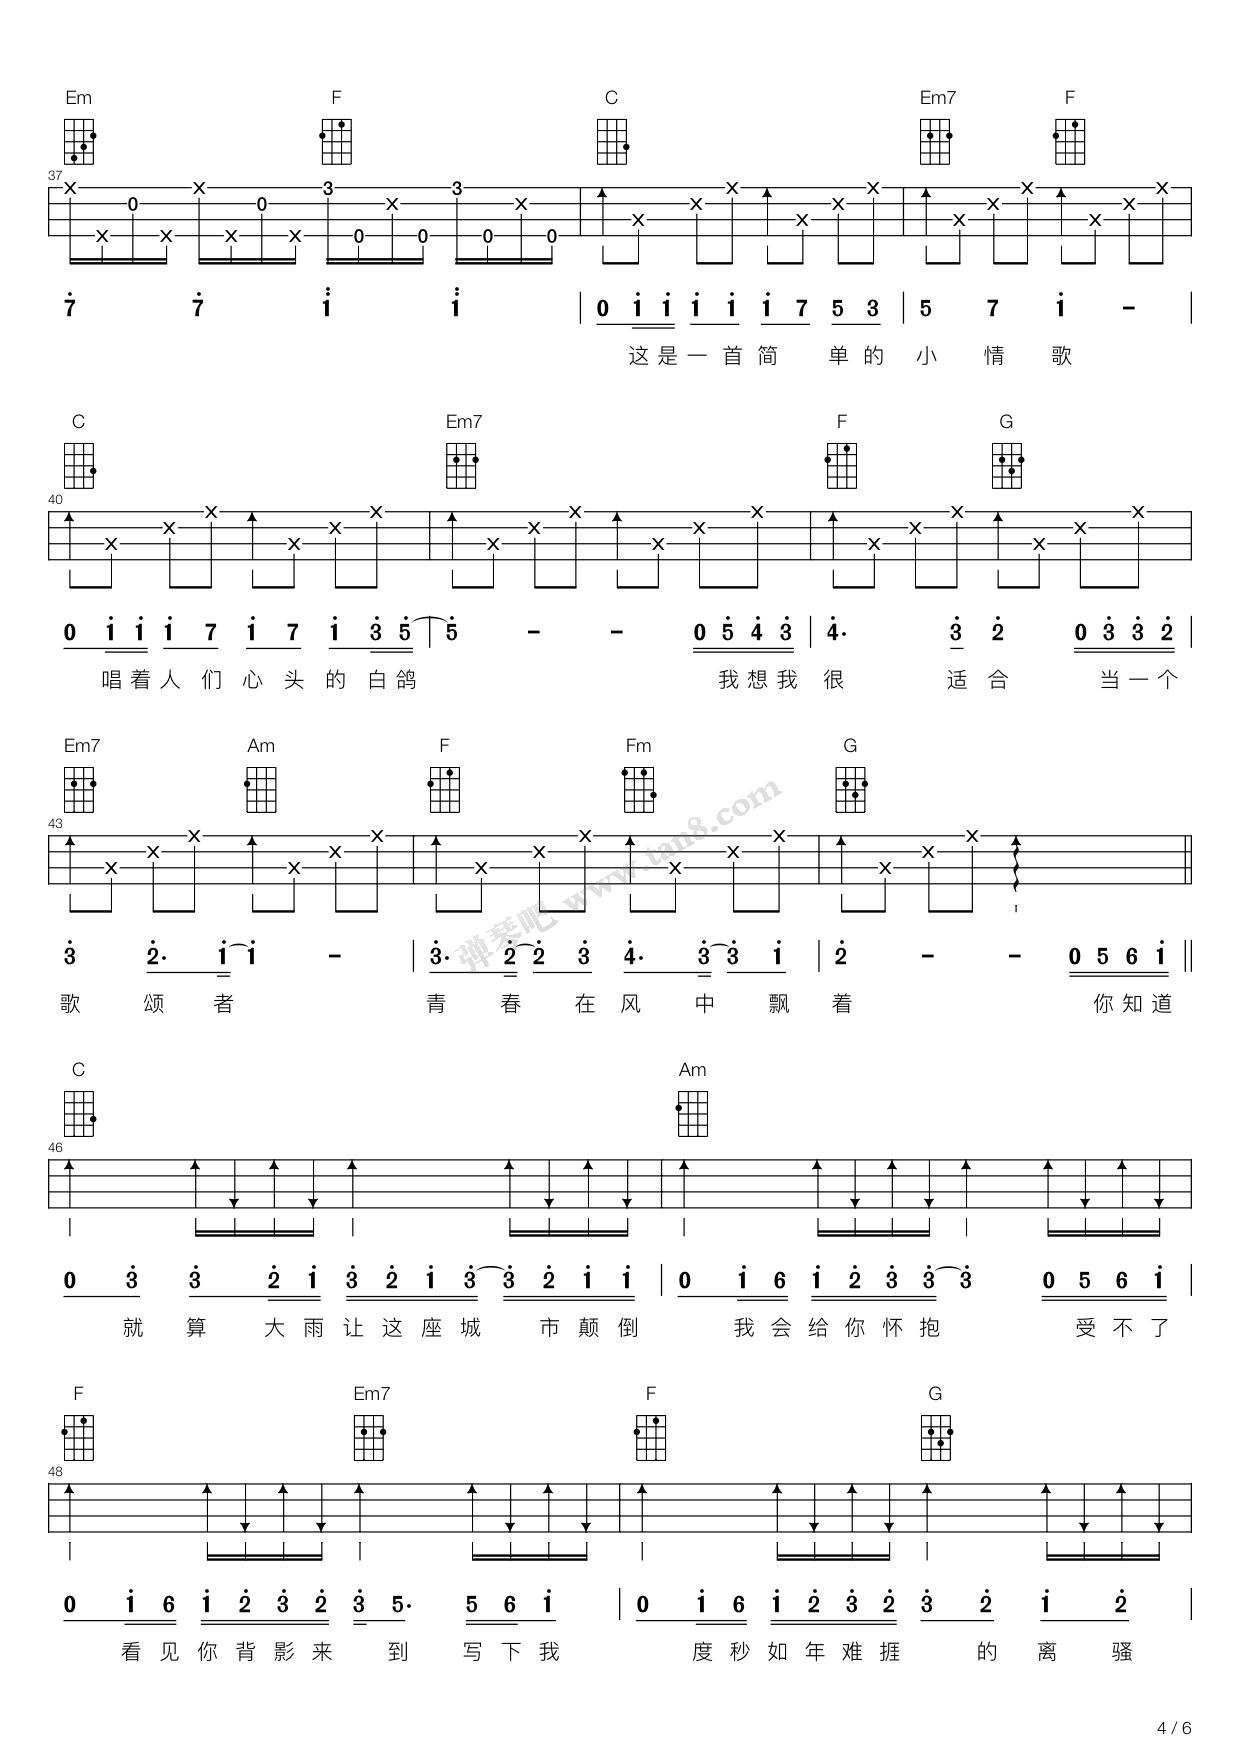 中国音乐学院-尤克里里考级-3级-天空之城-曲谱示范（必考曲目） - 哔哩哔哩